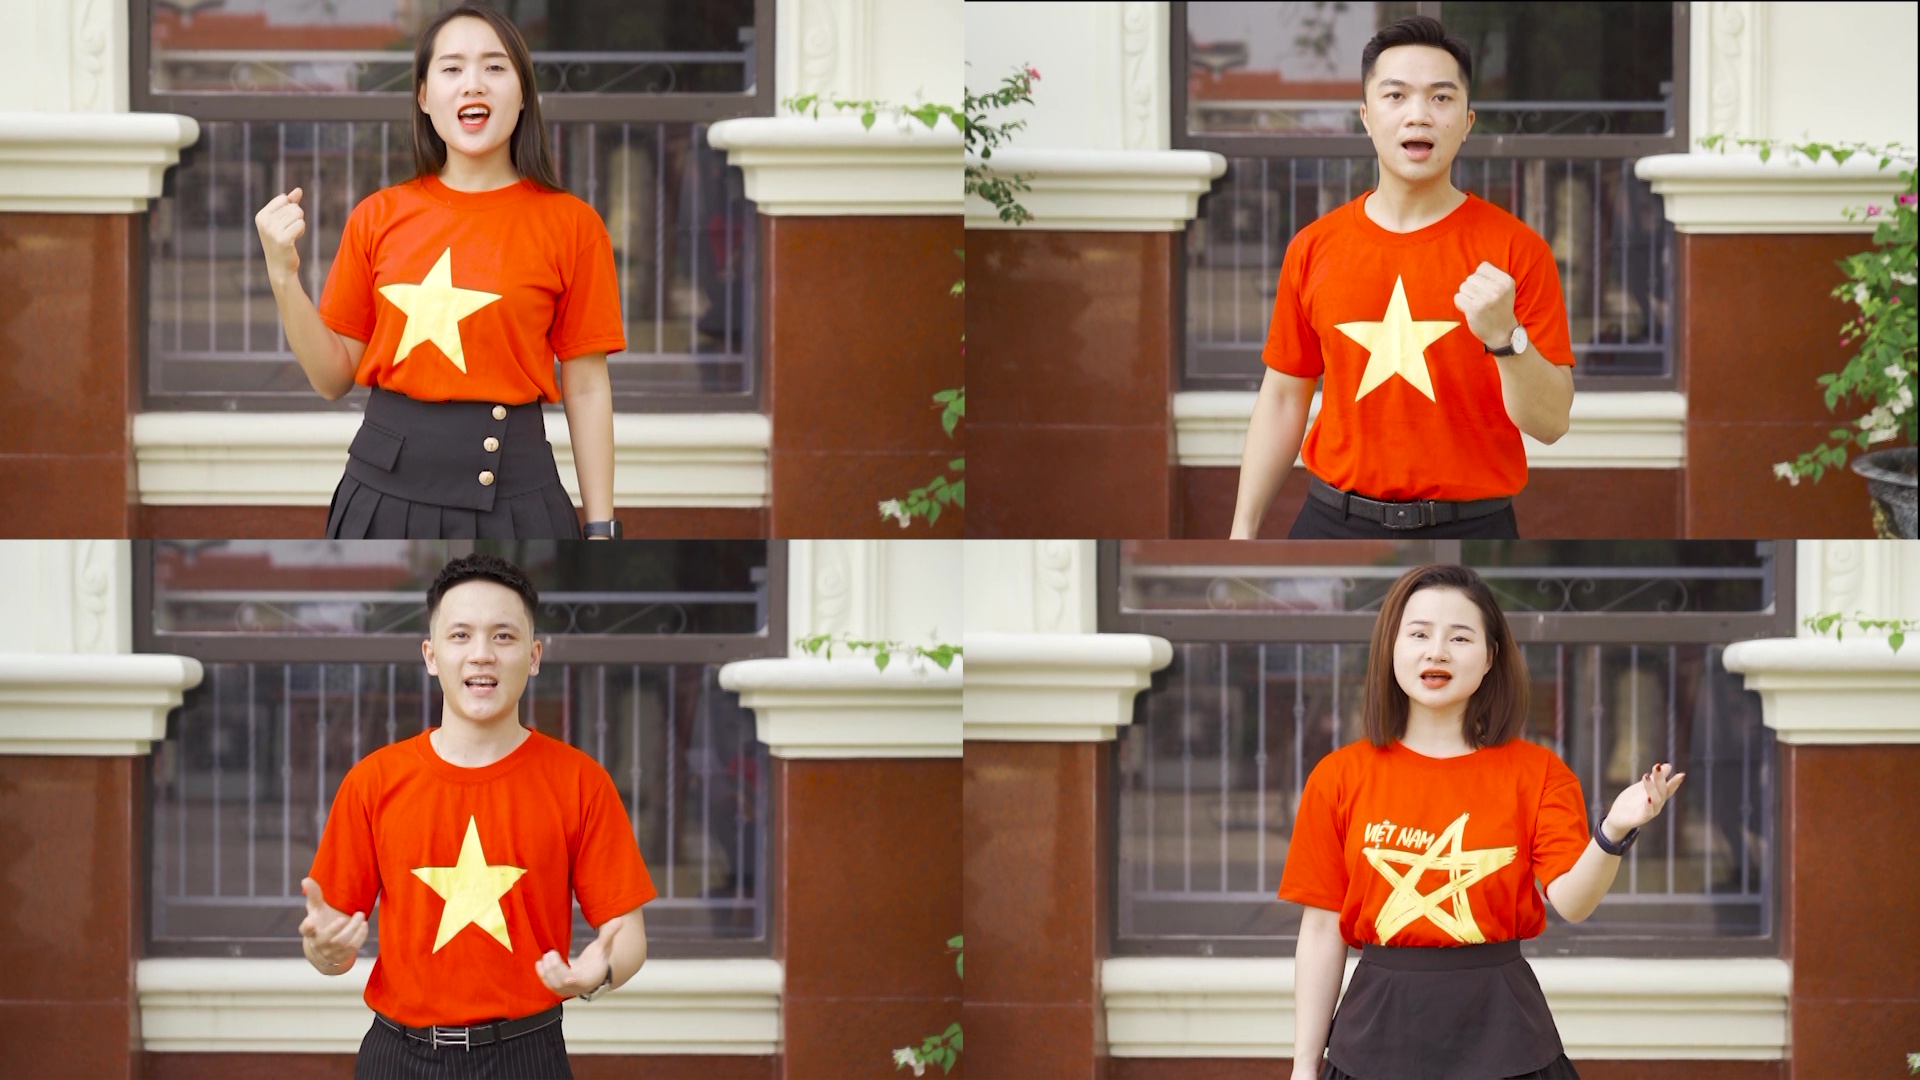 Bài hát Việt Nam ơi ta sẽ thắng cổ vũ tinh thần chống dịch của nước nhà